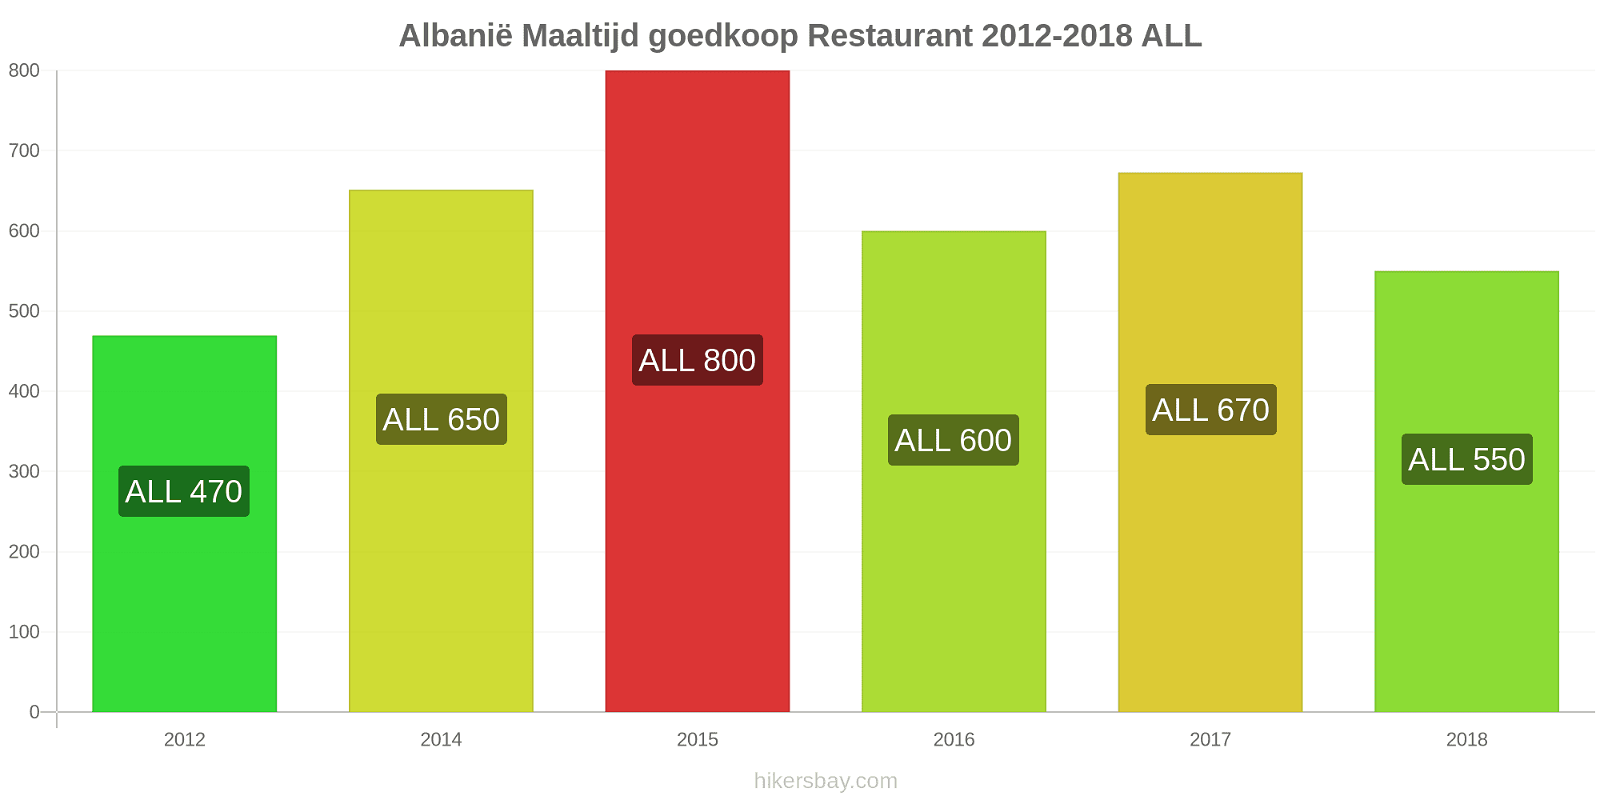 Albanië prijswijzigingen Maaltijd in een goedkoop restaurant hikersbay.com